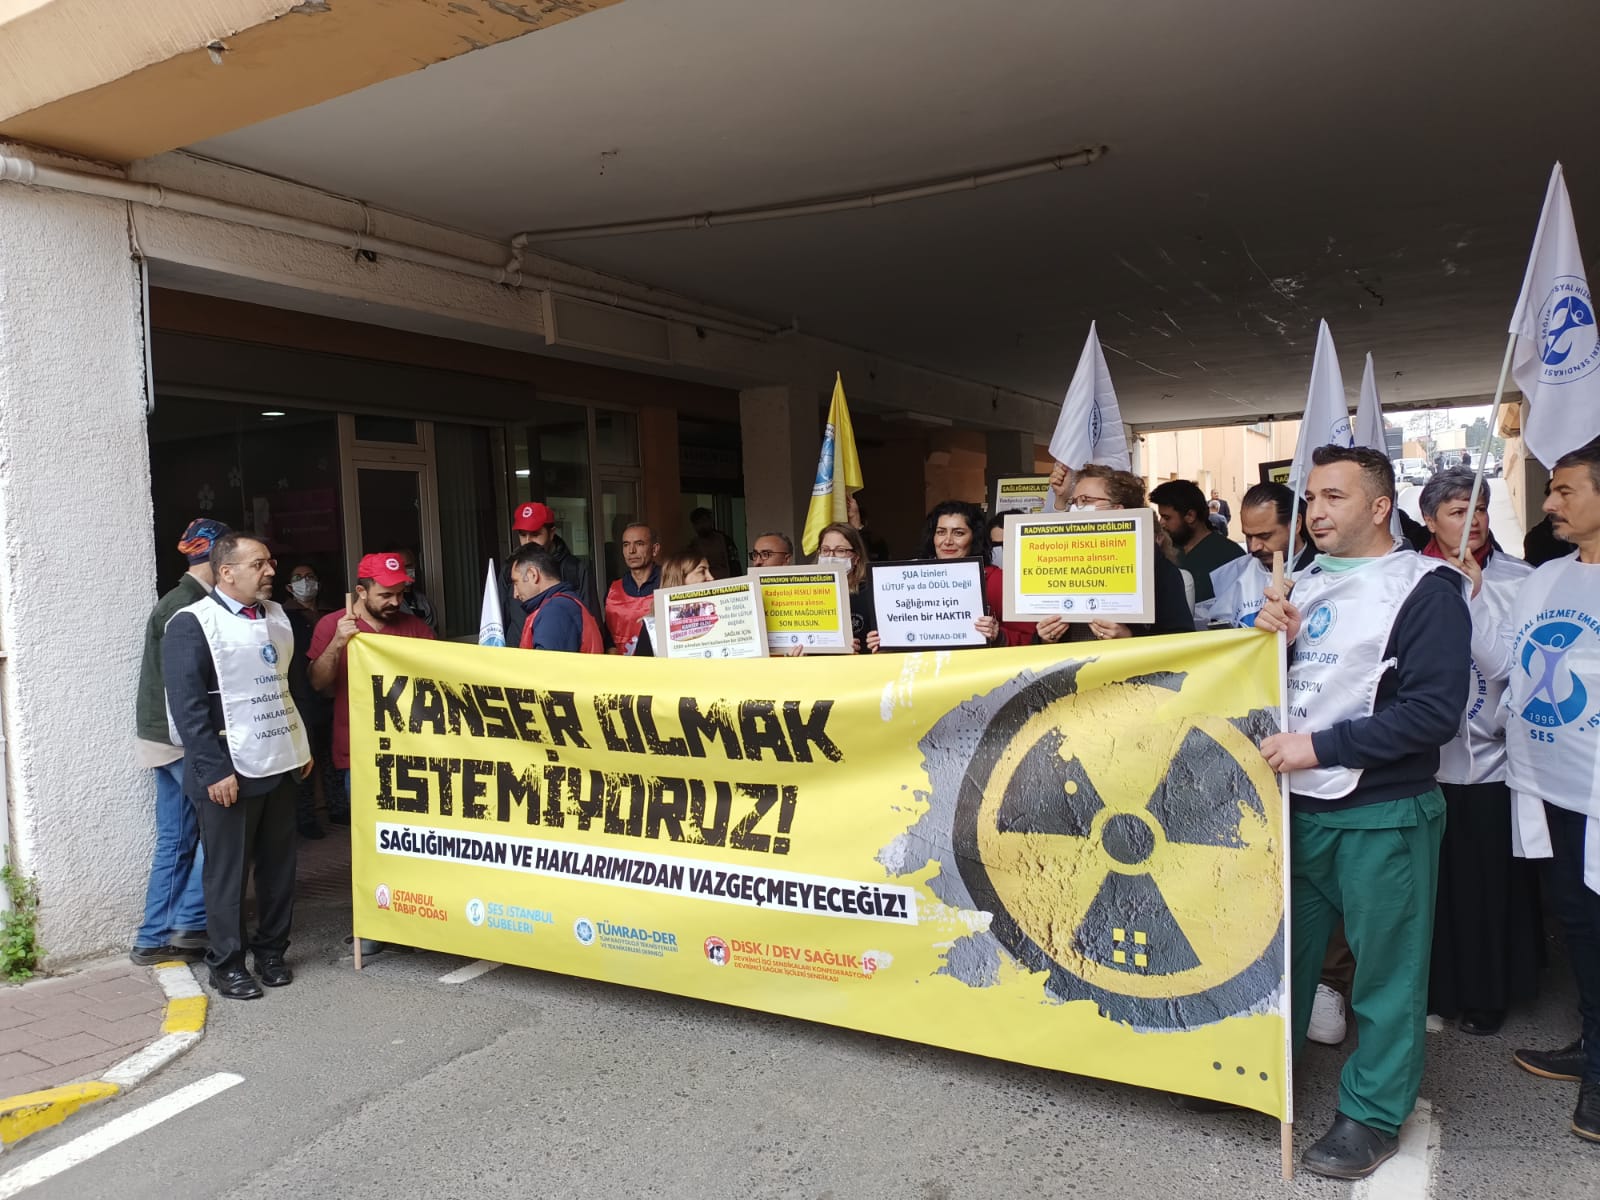 Radyoloji Çalışanlarının Sorunlarına ve Taleplerine Dikkat Çeken İstanbul Şubelerimiz, TÜMRAD-DER, Dev Sağlık-İş ve İstanbul Tabip Odası: Sağlığımızdan ve Haklarımızdan Vazgeçmeyeceğiz!